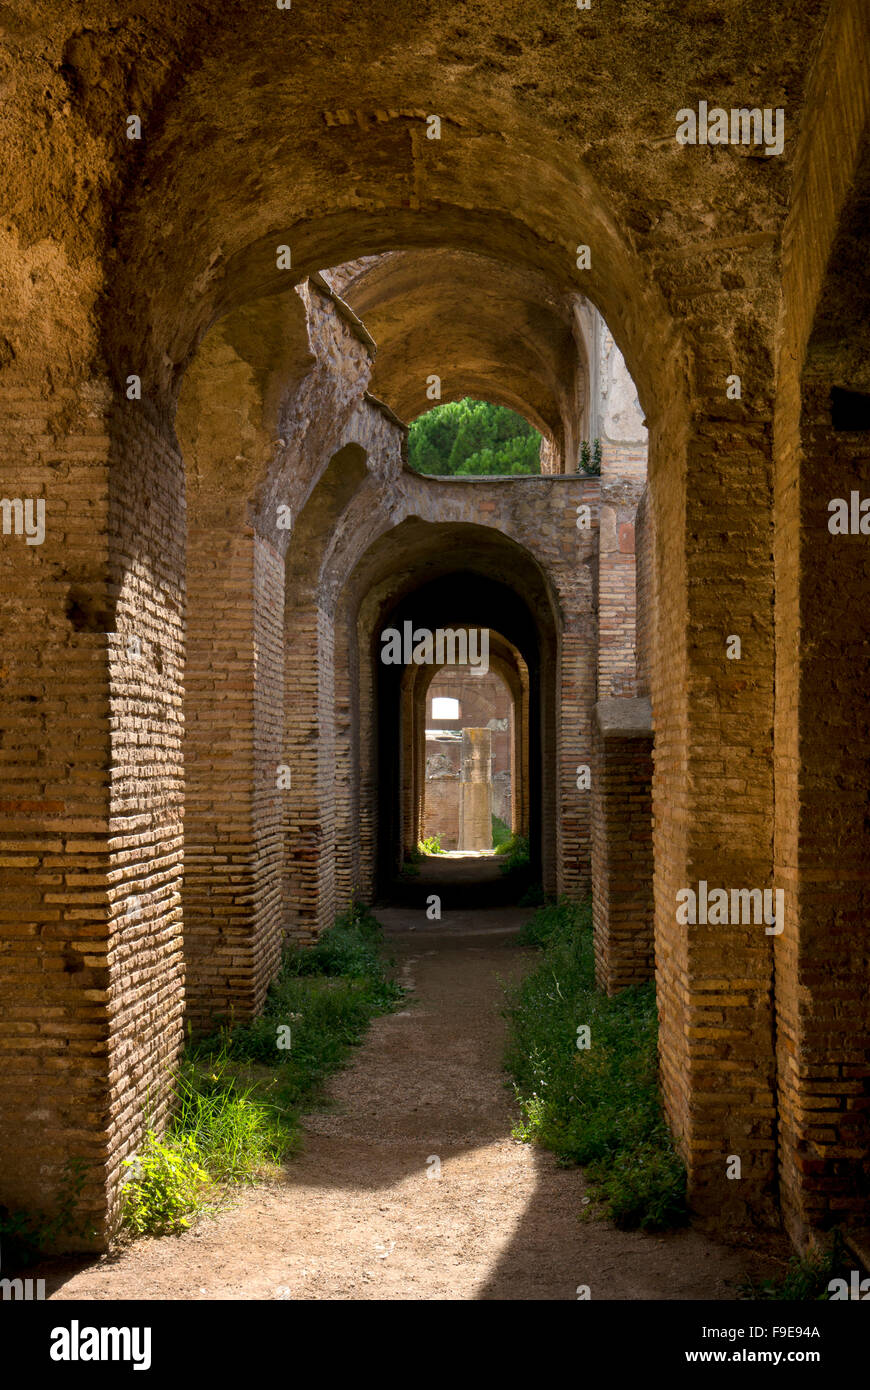 Arcades de briques dans l'ancien port romain d'Ostie, près de Rome, Italie, Europe Banque D'Images